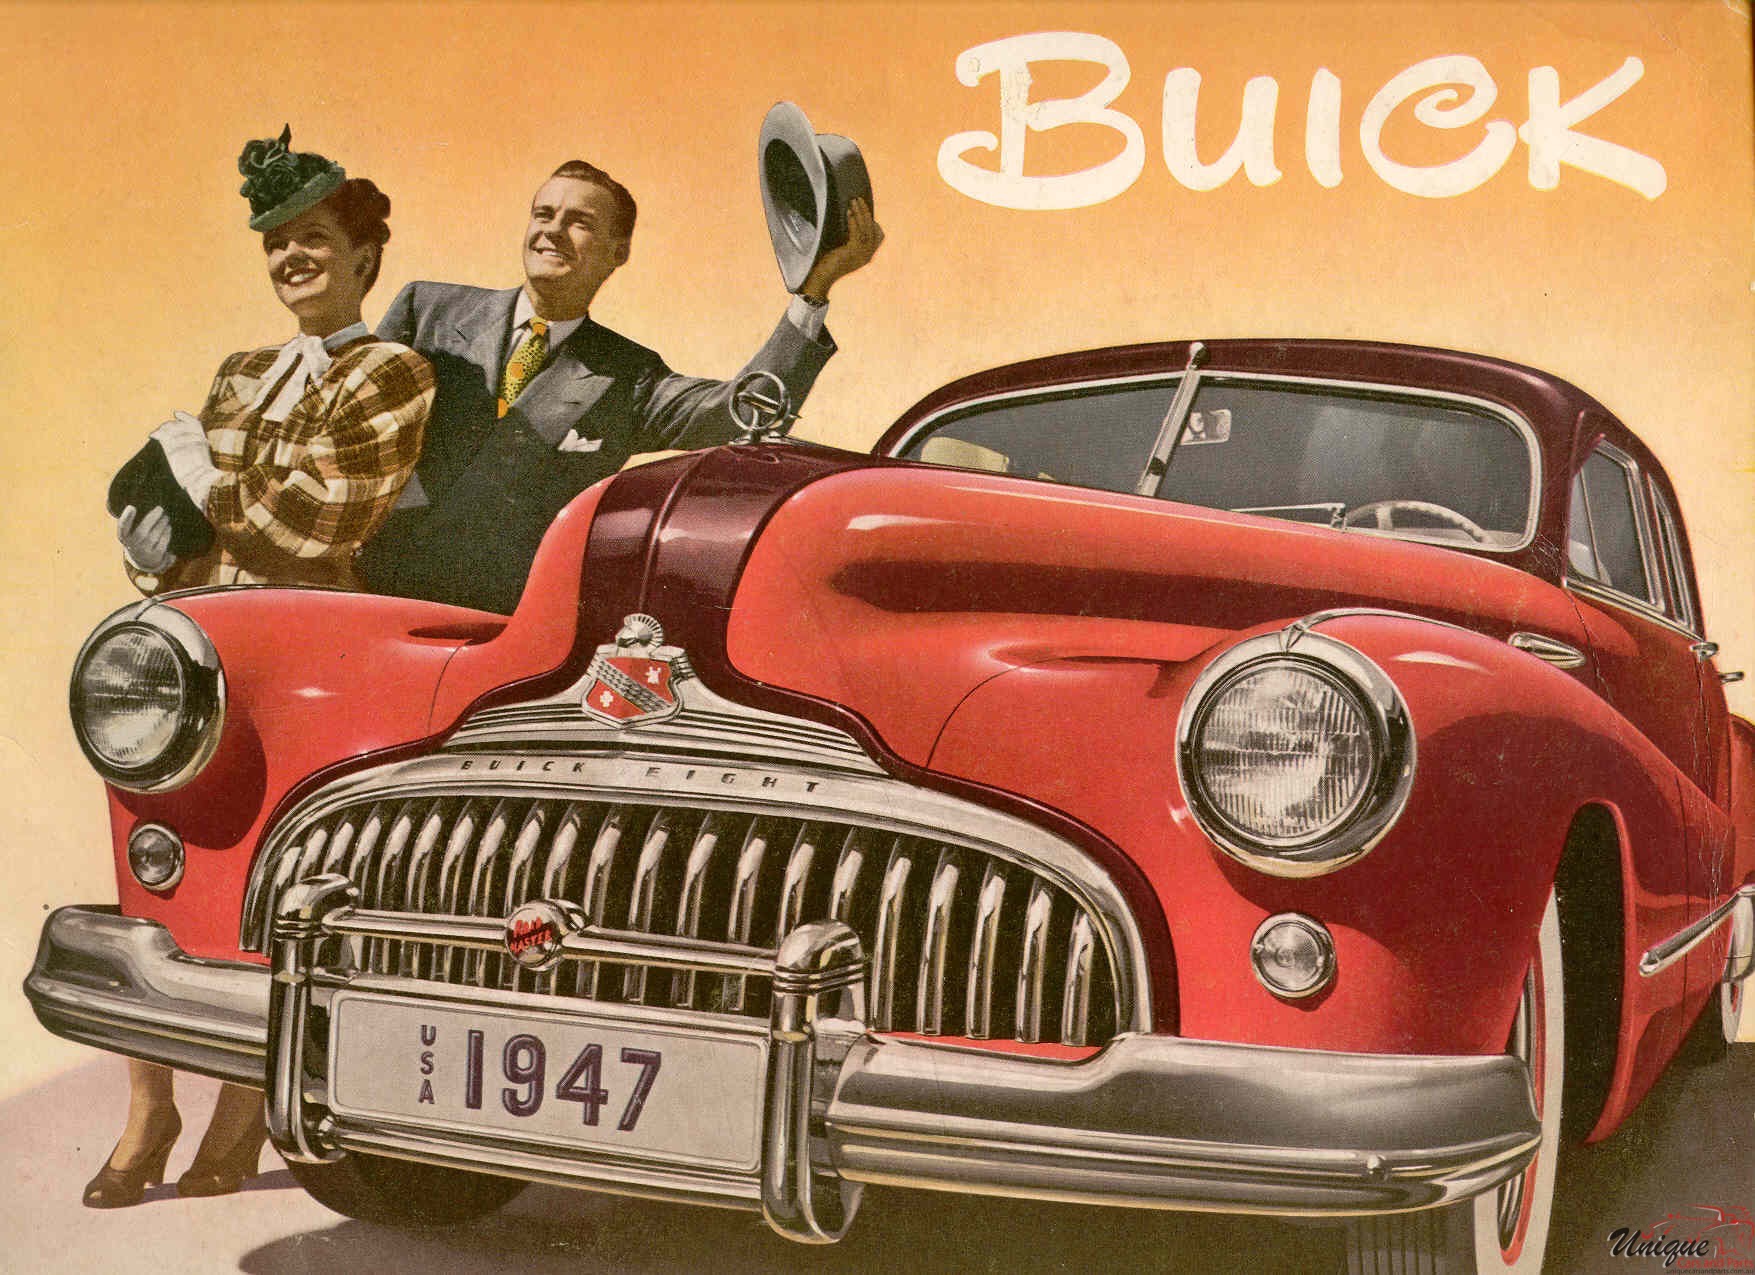 1947 Buick Brochure